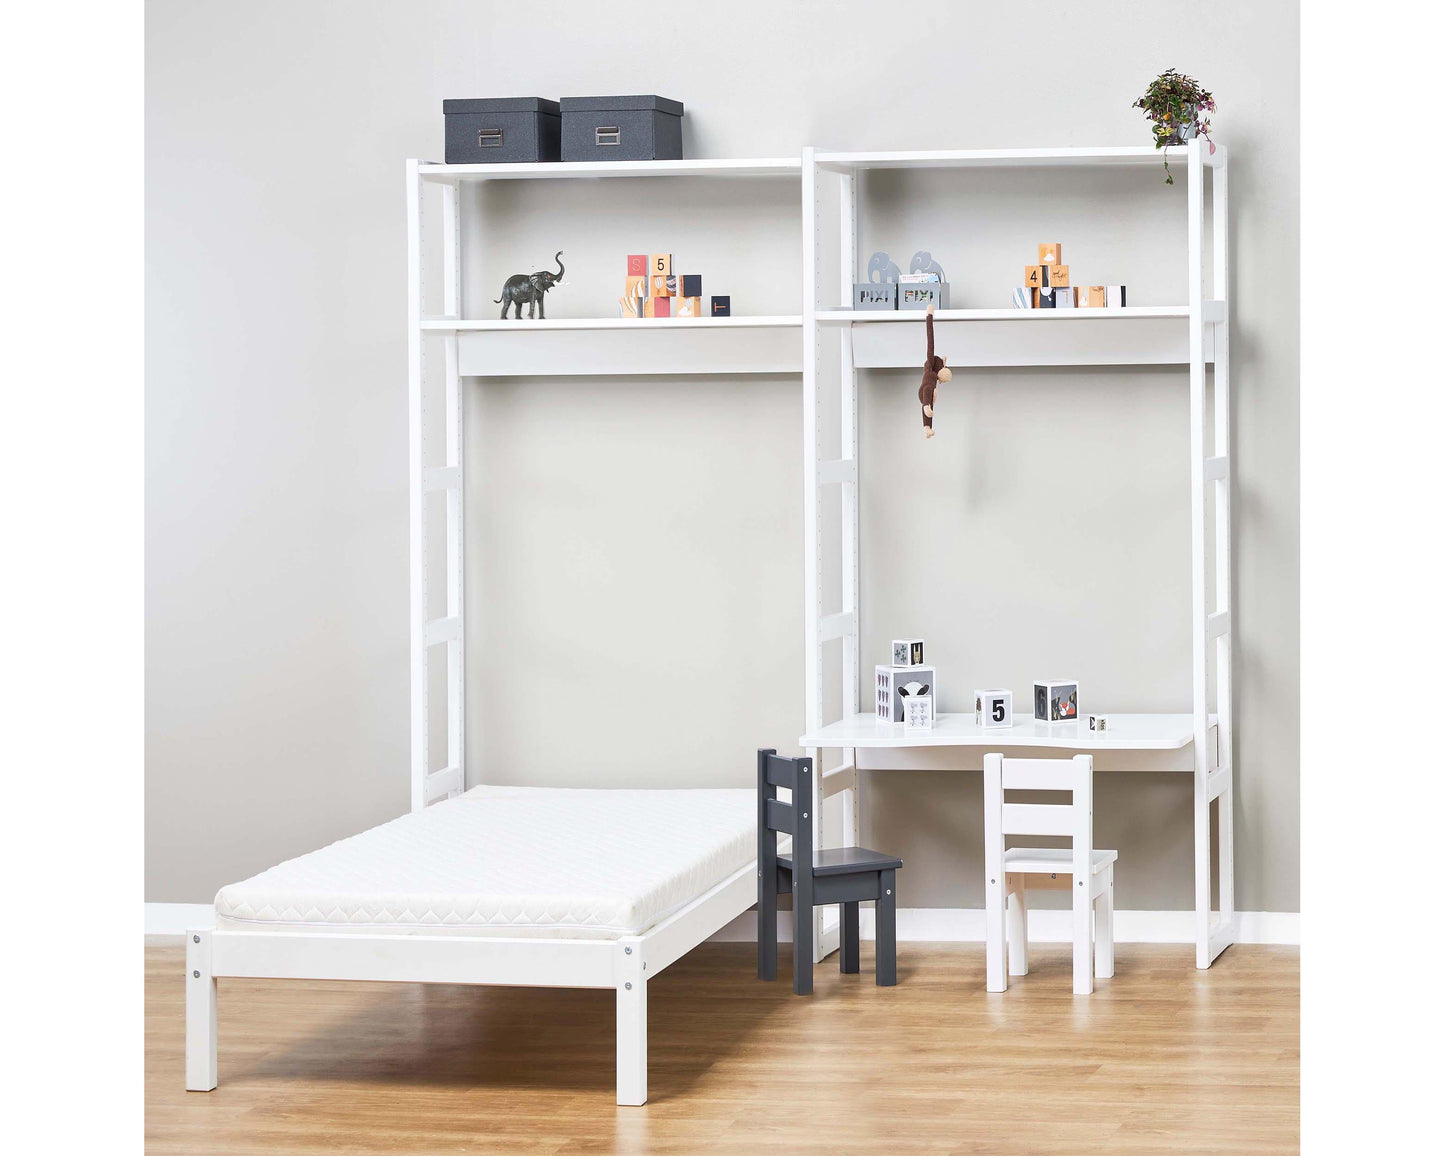 Этаж - Стеллаж с 2 секциями, 4 полки, кровать 70x160 см и письменный стол - 80 см - Белый